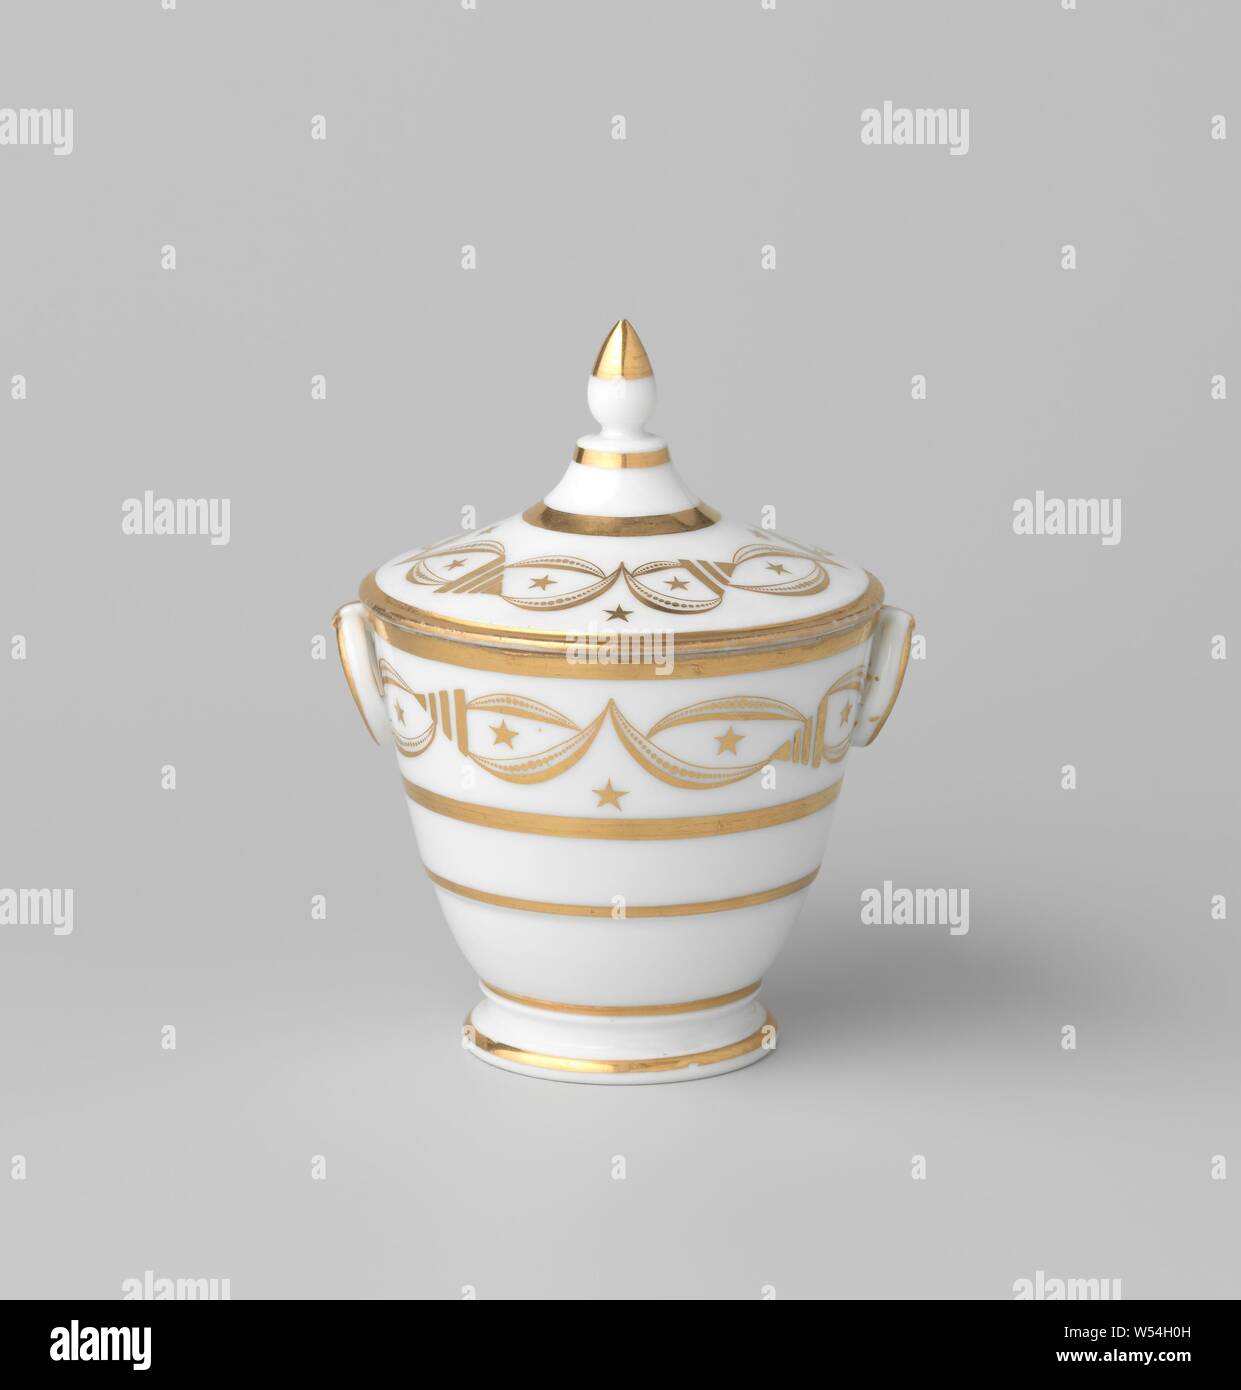 Sugar bowl with ornamental borders, France, c. 1800 - c. 1824, porcelain, glaze, gold (metal), vitrification, h 9.8 cm d 10.6 cm d 6.9 cm w 12.4 cm Stock Photo